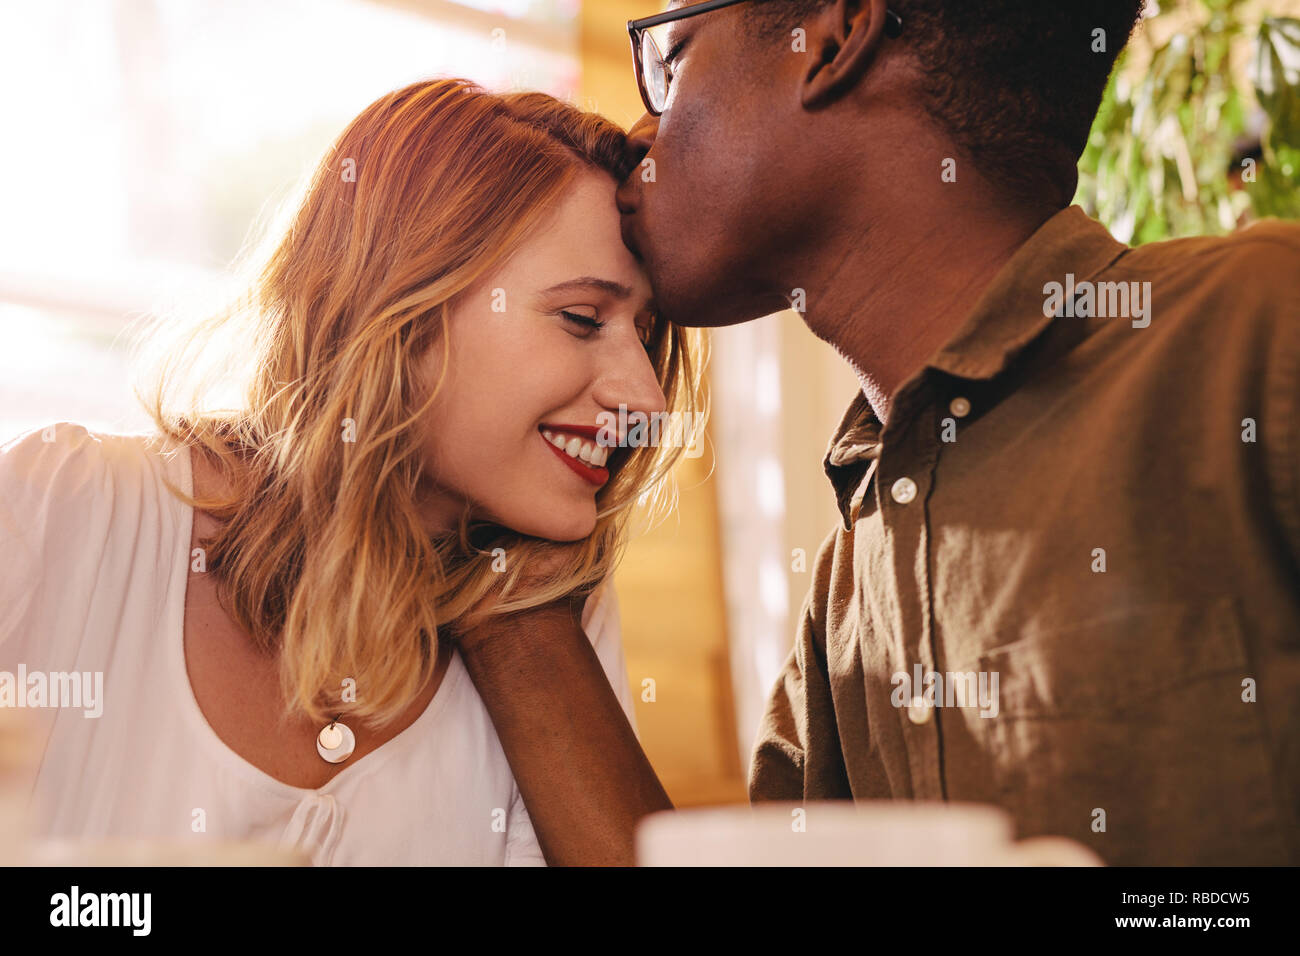 Homme africain s'embrasser le front de sa petite amie. Loving couple interracial le date à café. Banque D'Images